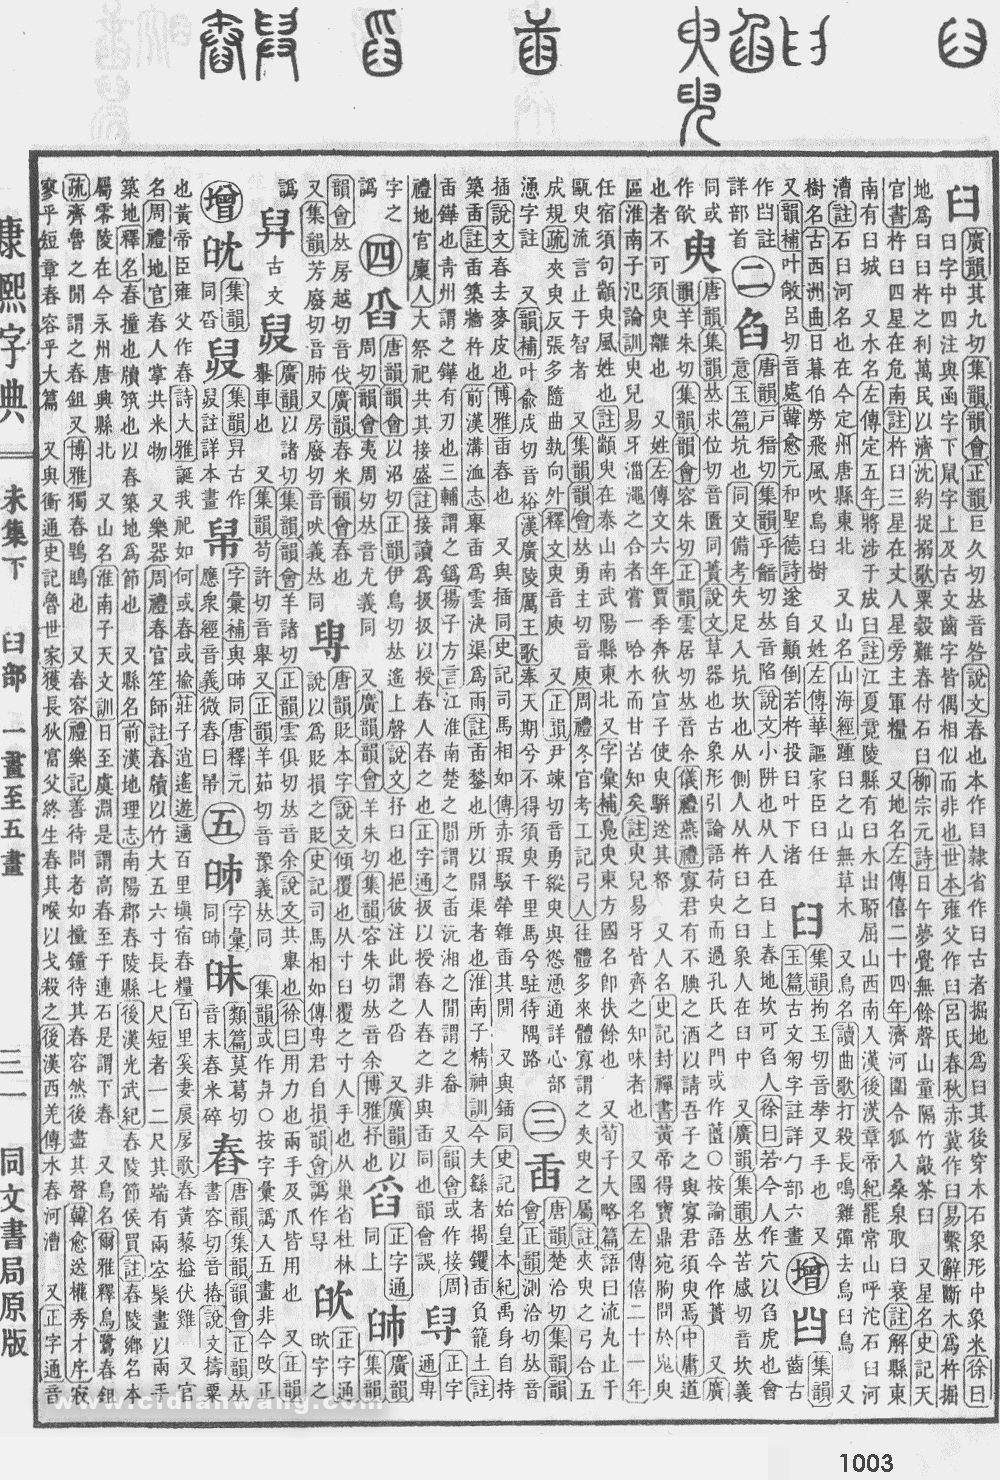 康熙字典掃描版第1003頁